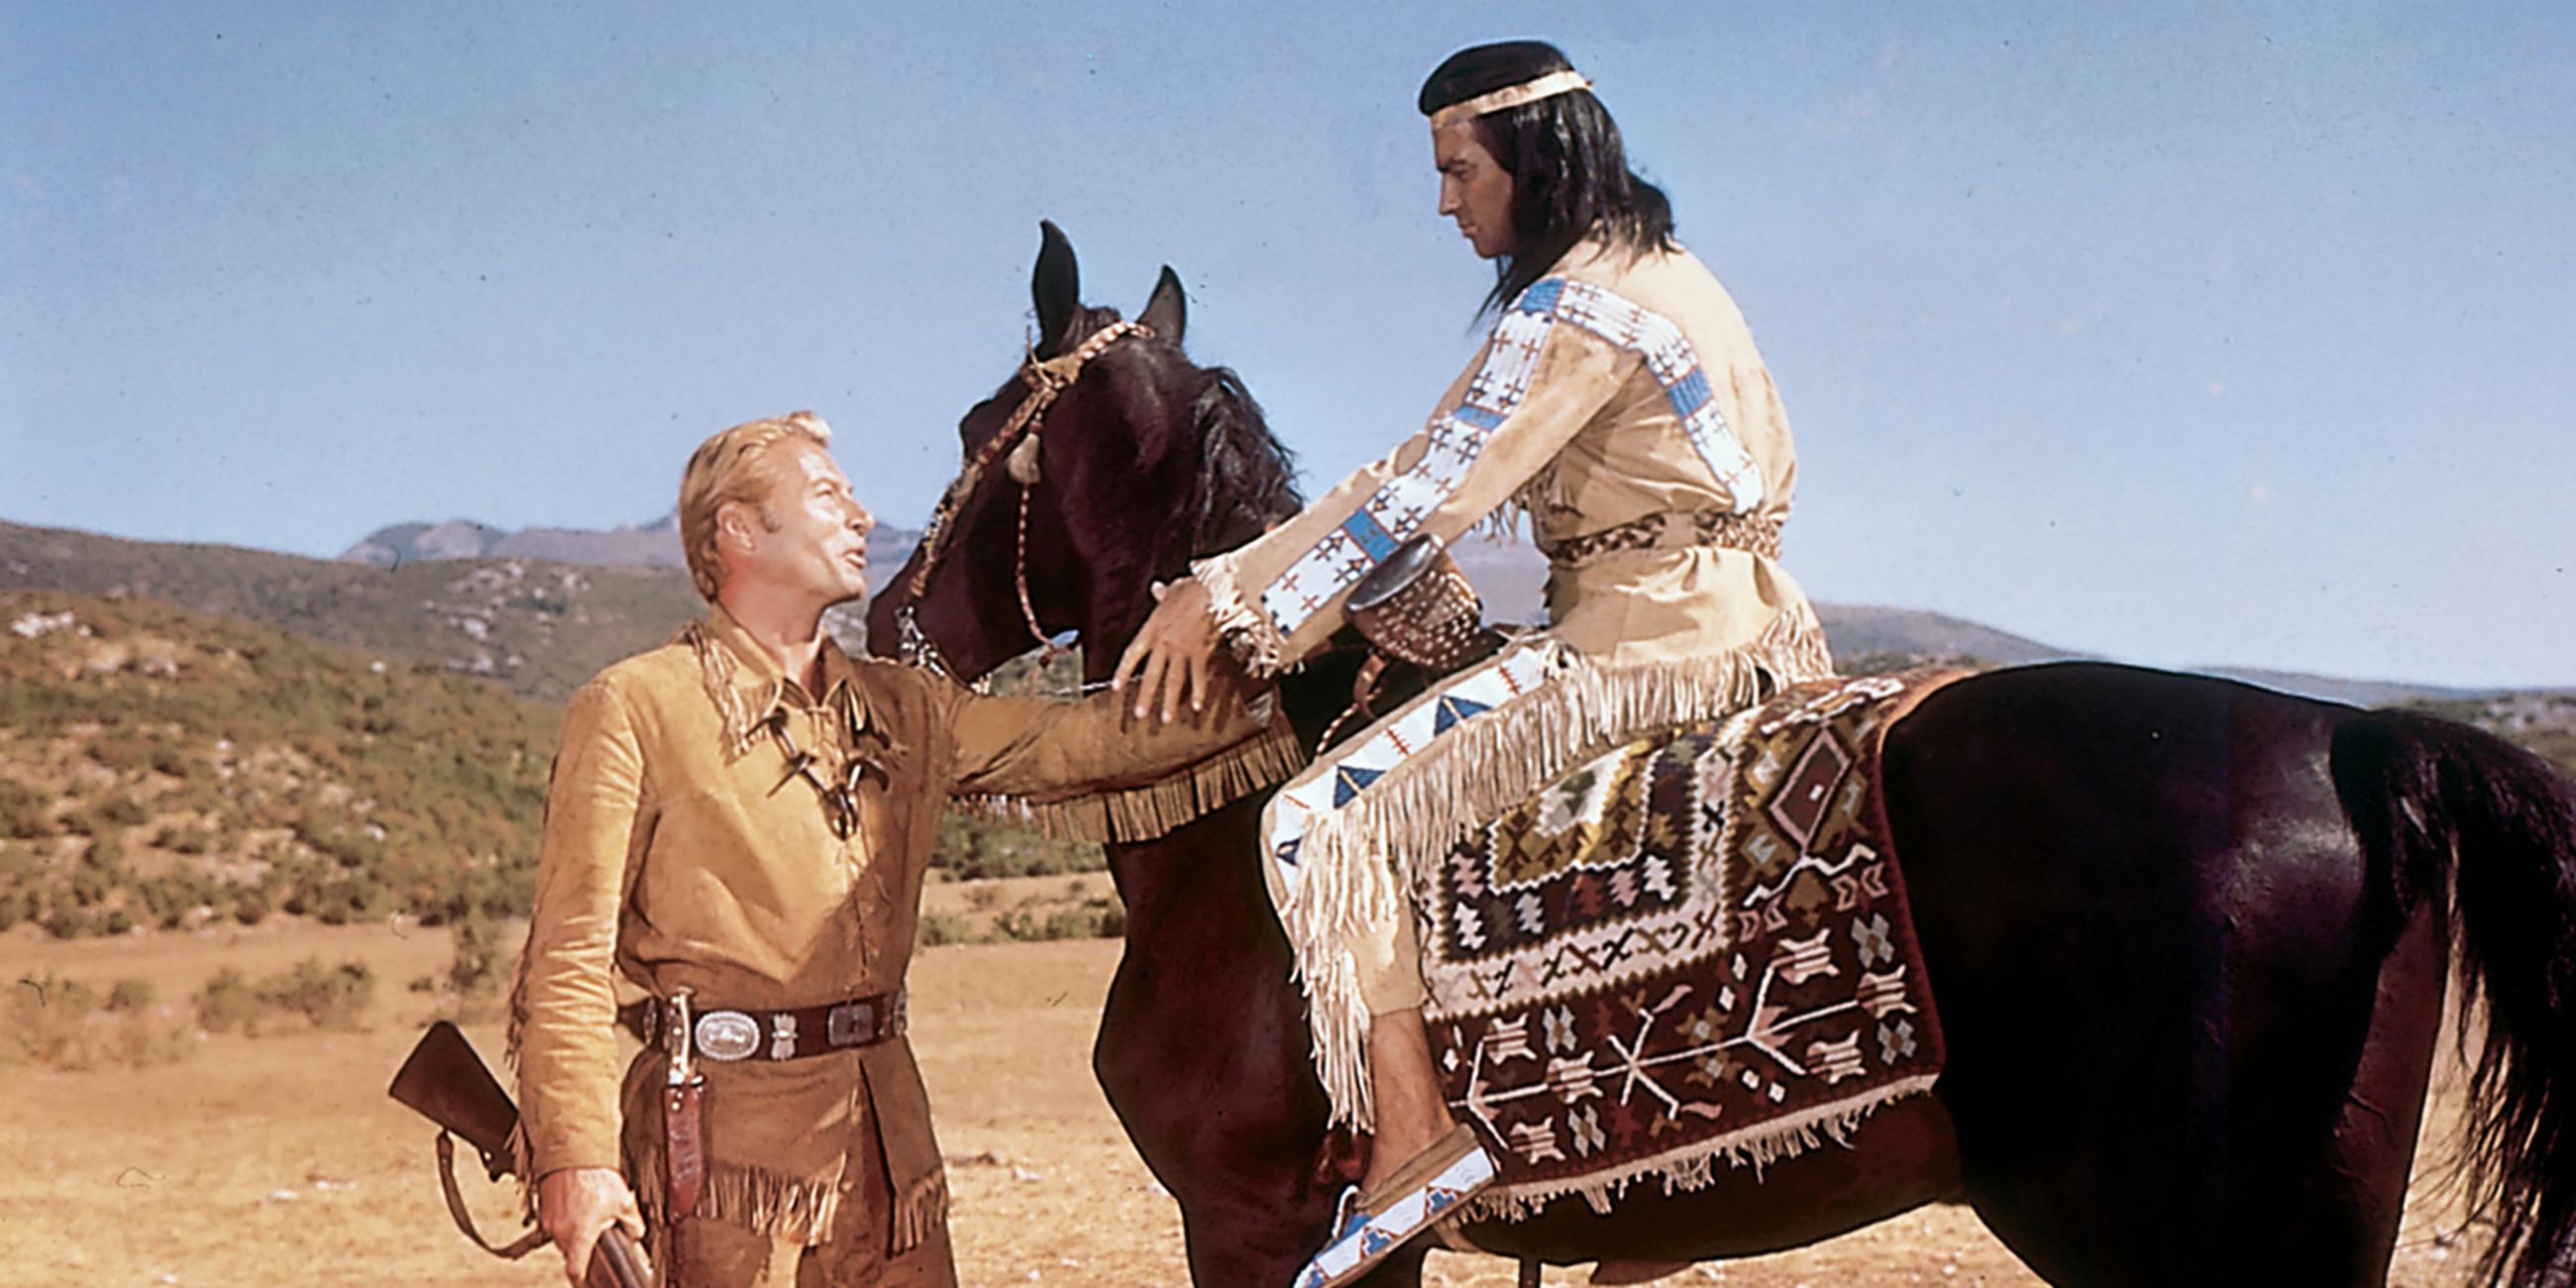 Old Shatterhand (Lex Barker) steht vor Winnetou (Pierre Brice), der auf seinem Pferd sitzt. Die beiden reichen sich die Hand.